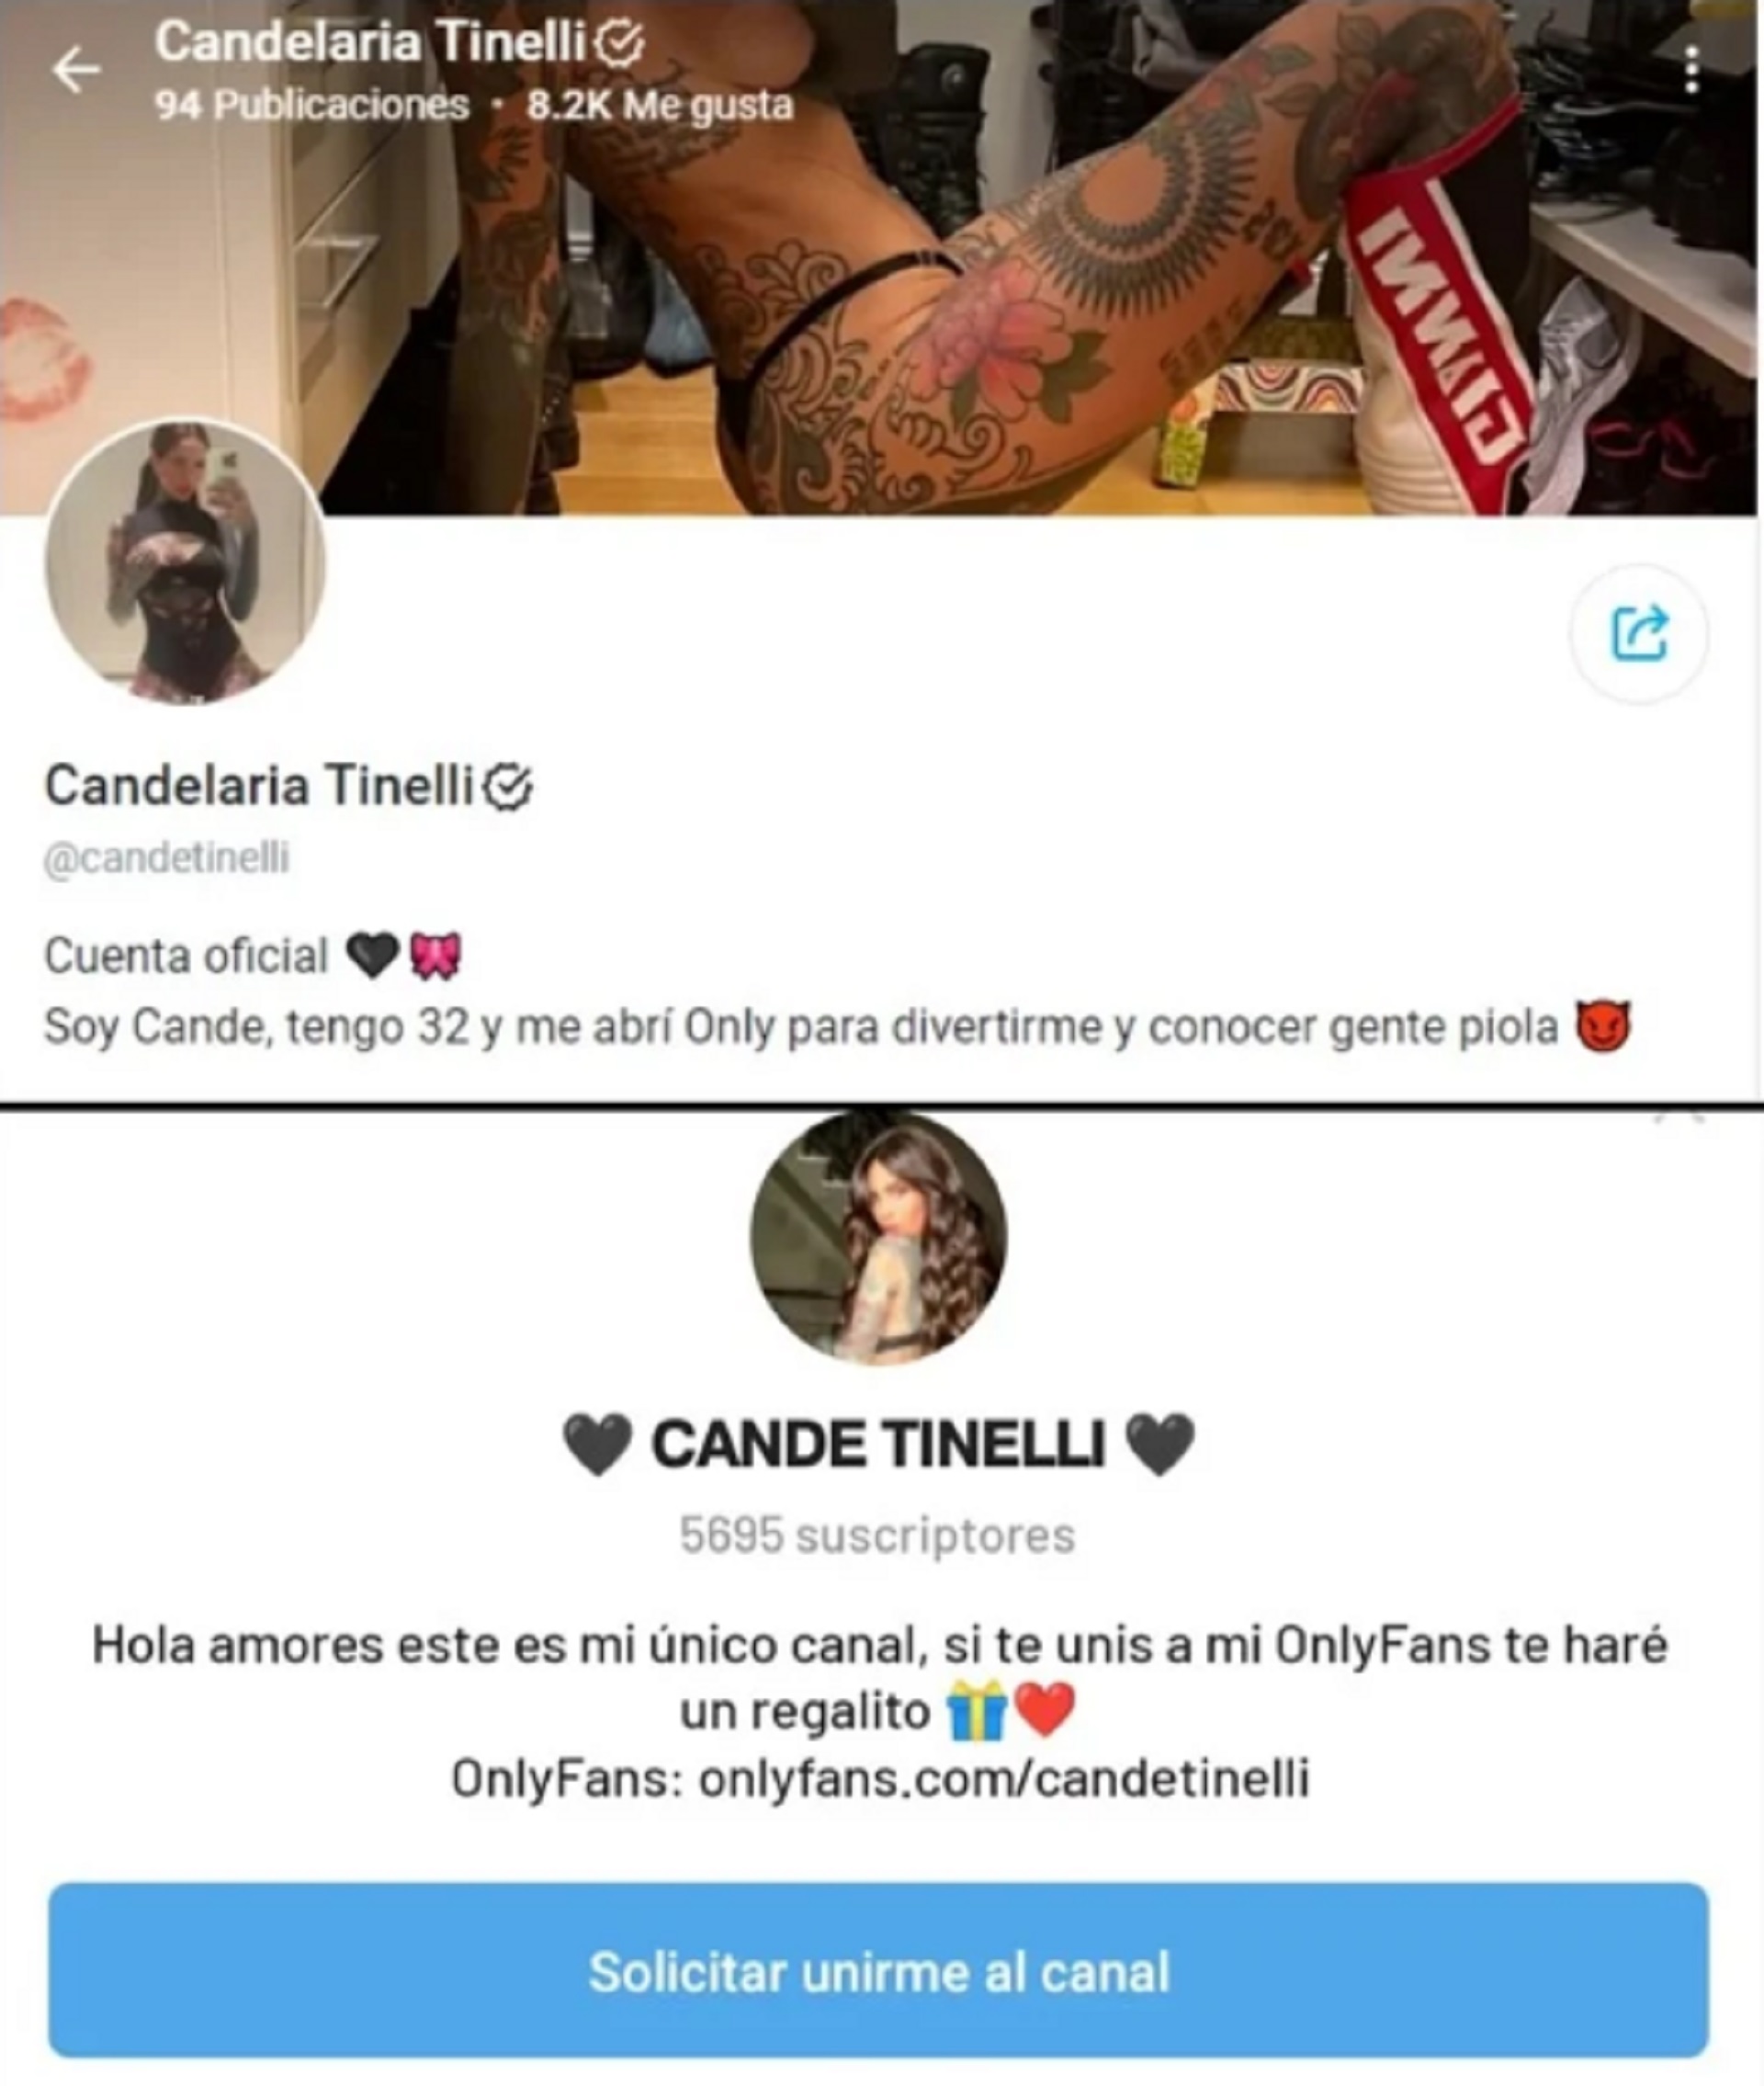 El perfil de Cande Tinelli